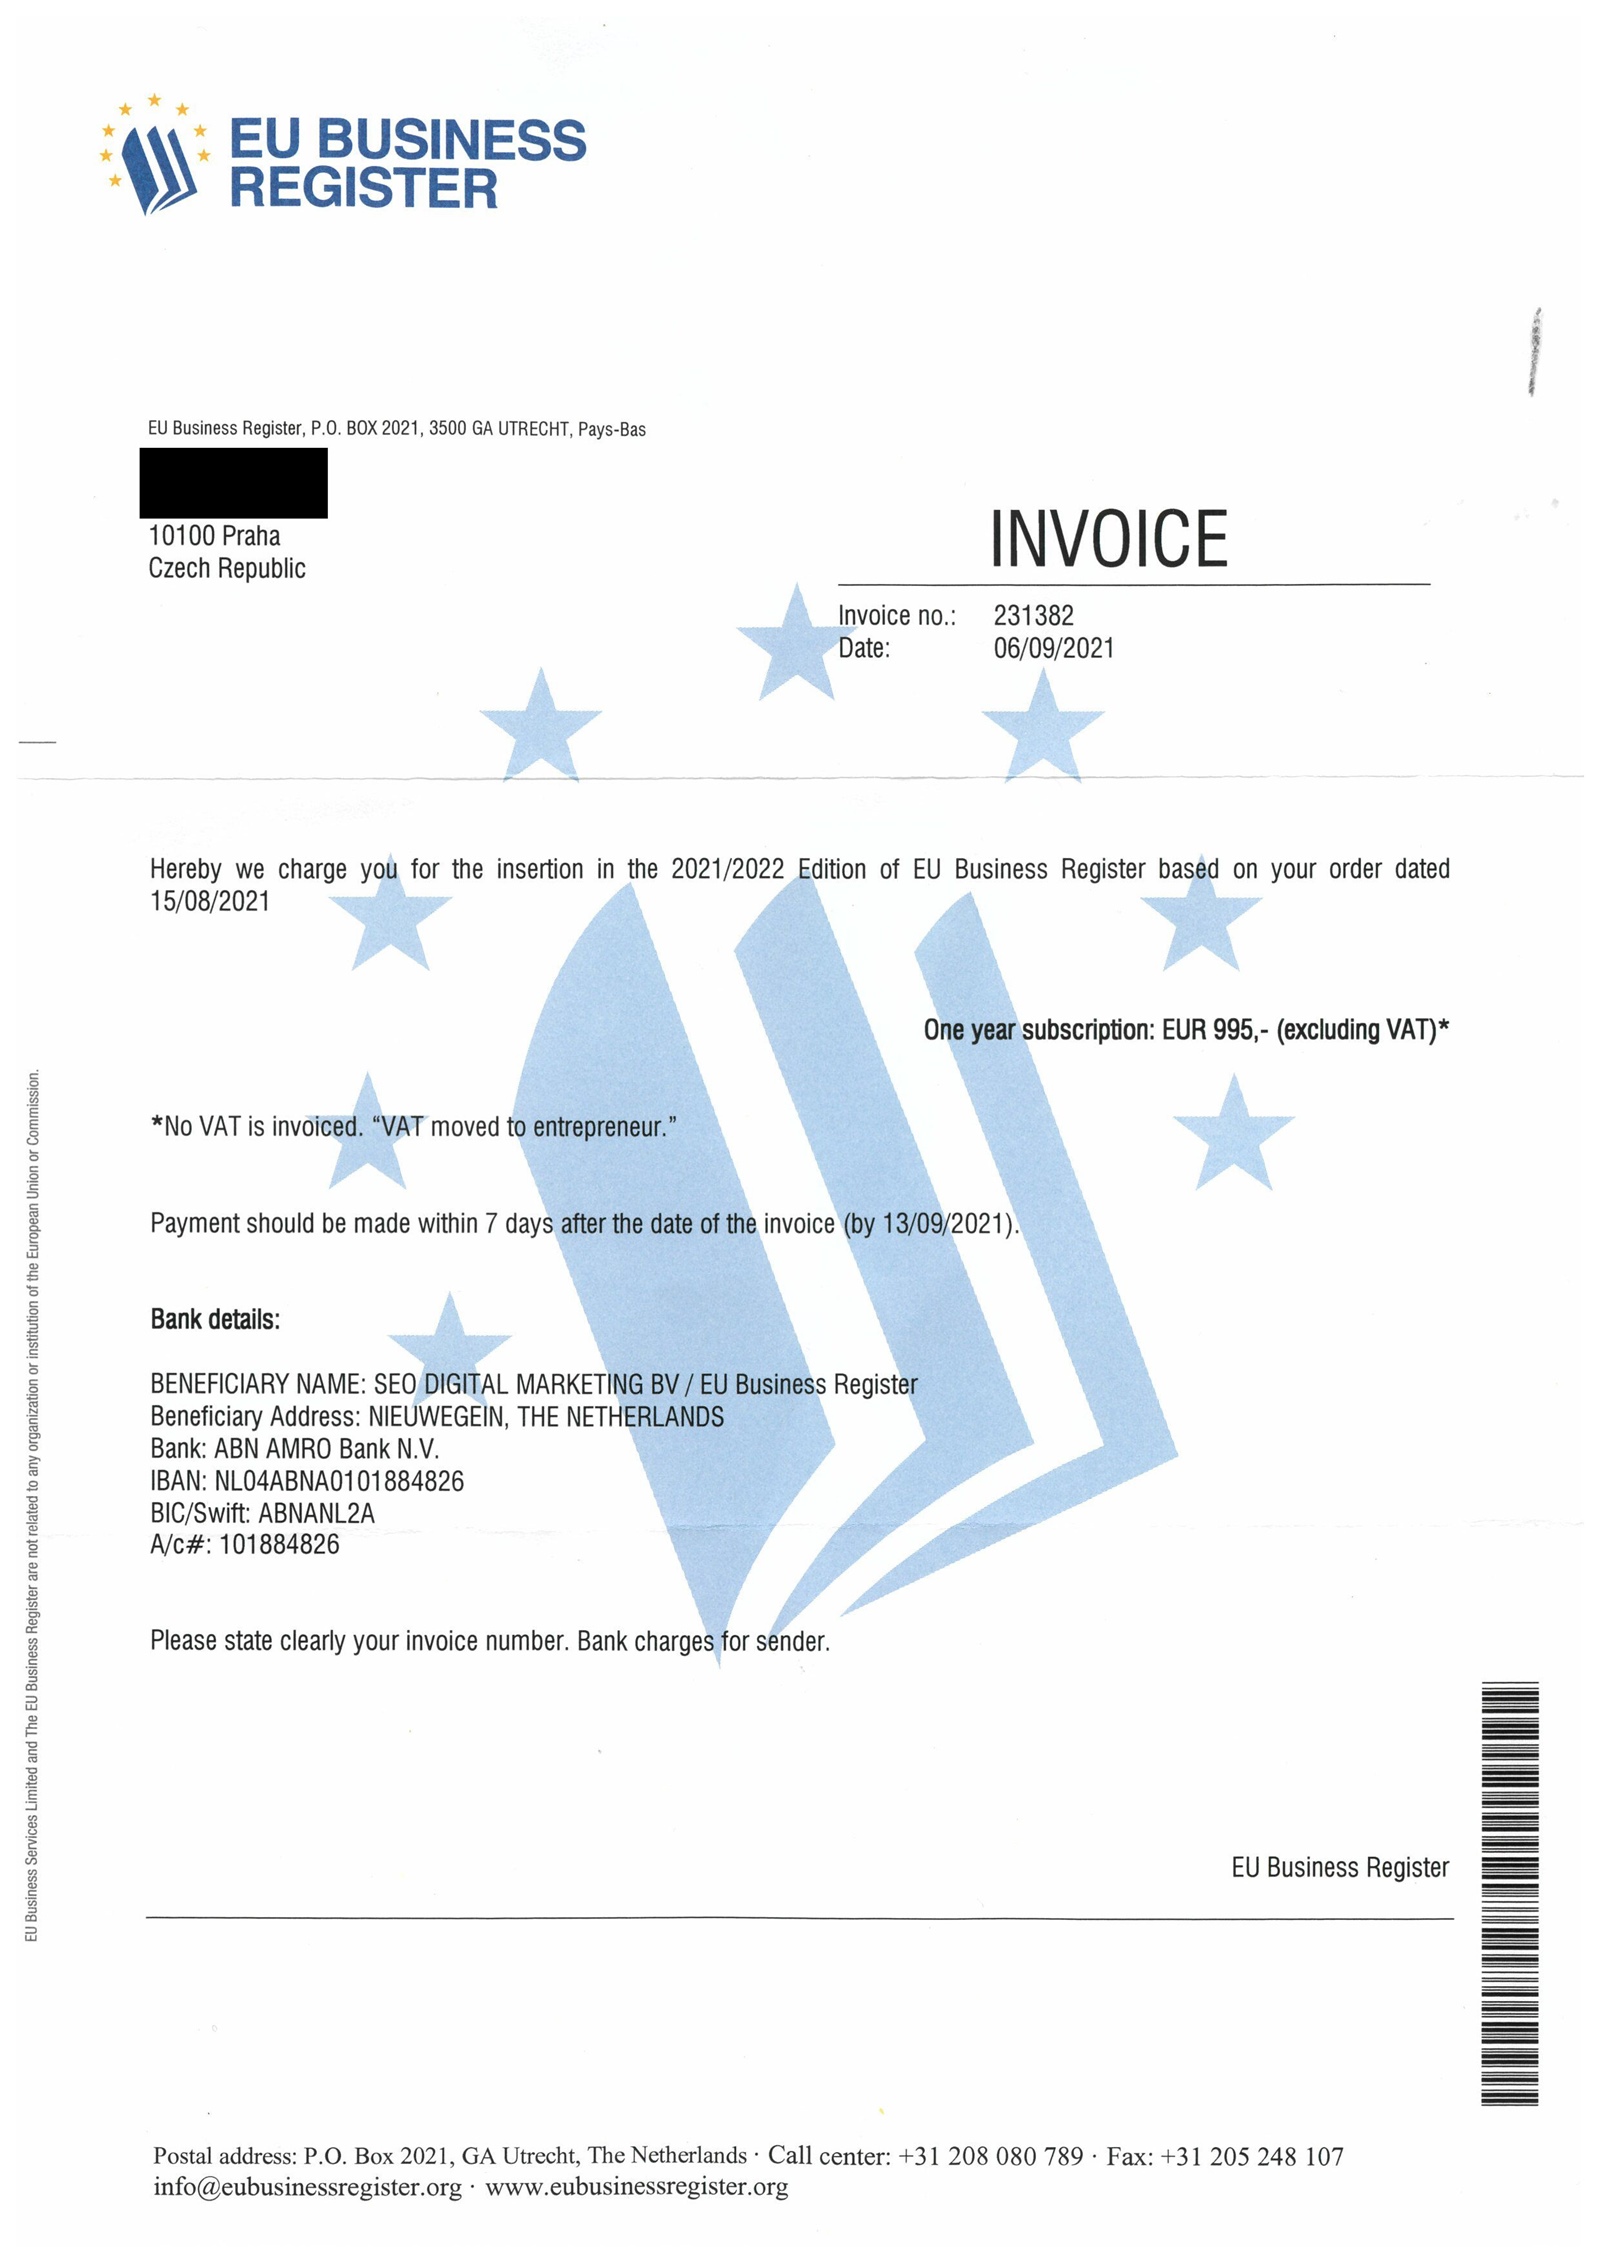 Spam “EU Business Register”: o que acontece se você não pagar